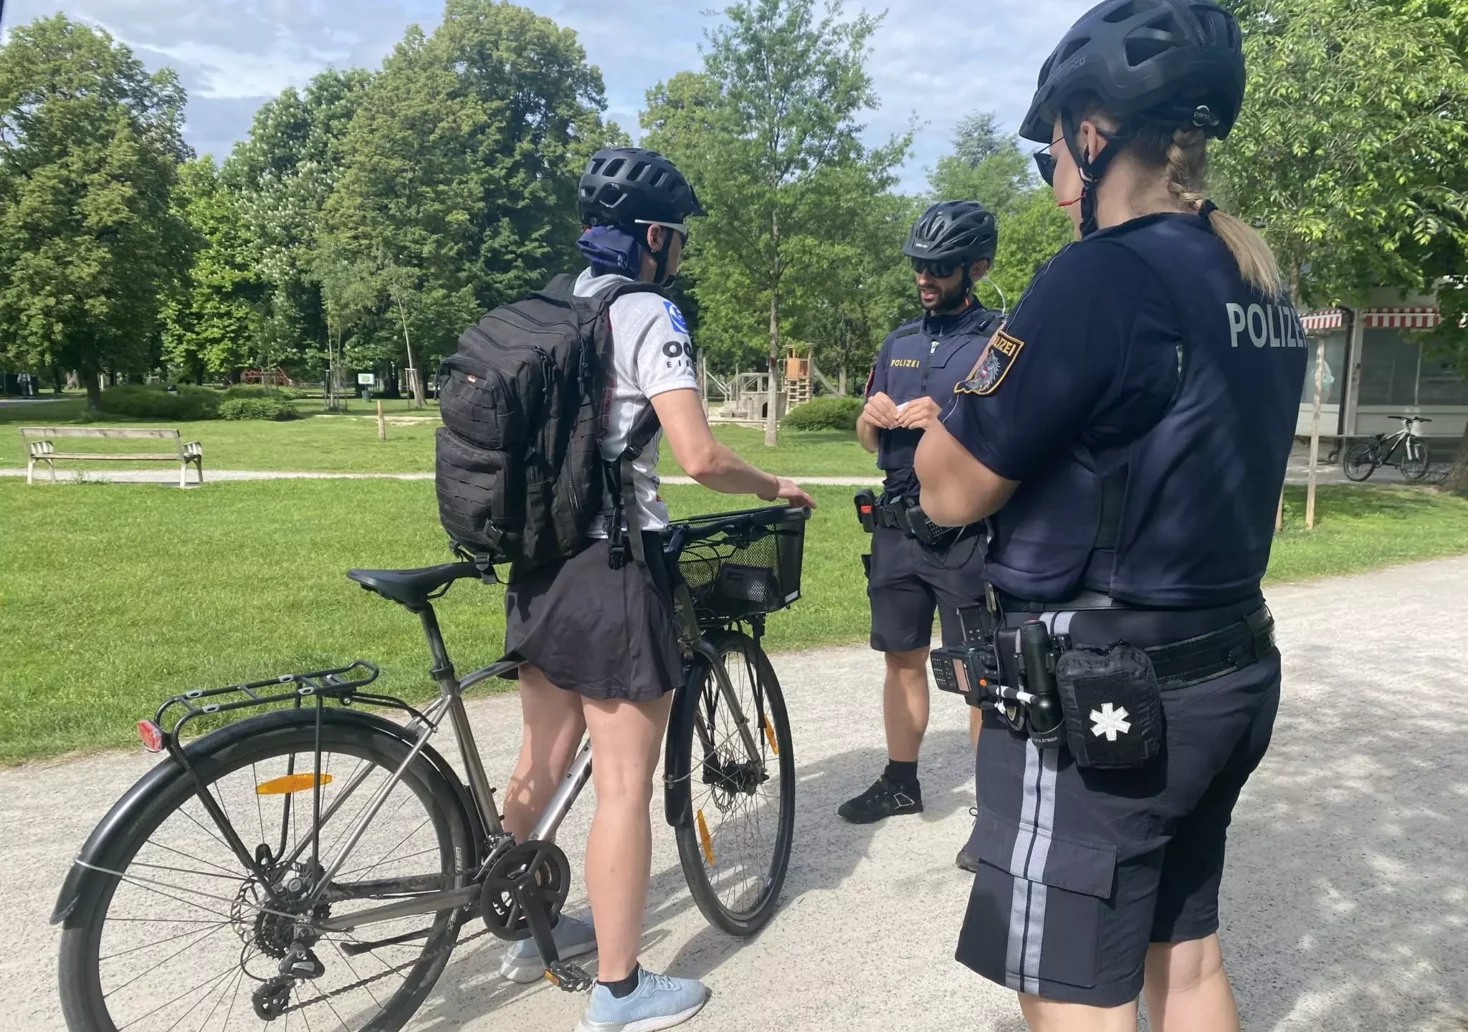 Bild auf 5min.at zeigt zwei Polizisten bei einer Fahrrad-Kontrolle. Eine frau auf einem Fahrrad wird kontrolliert.